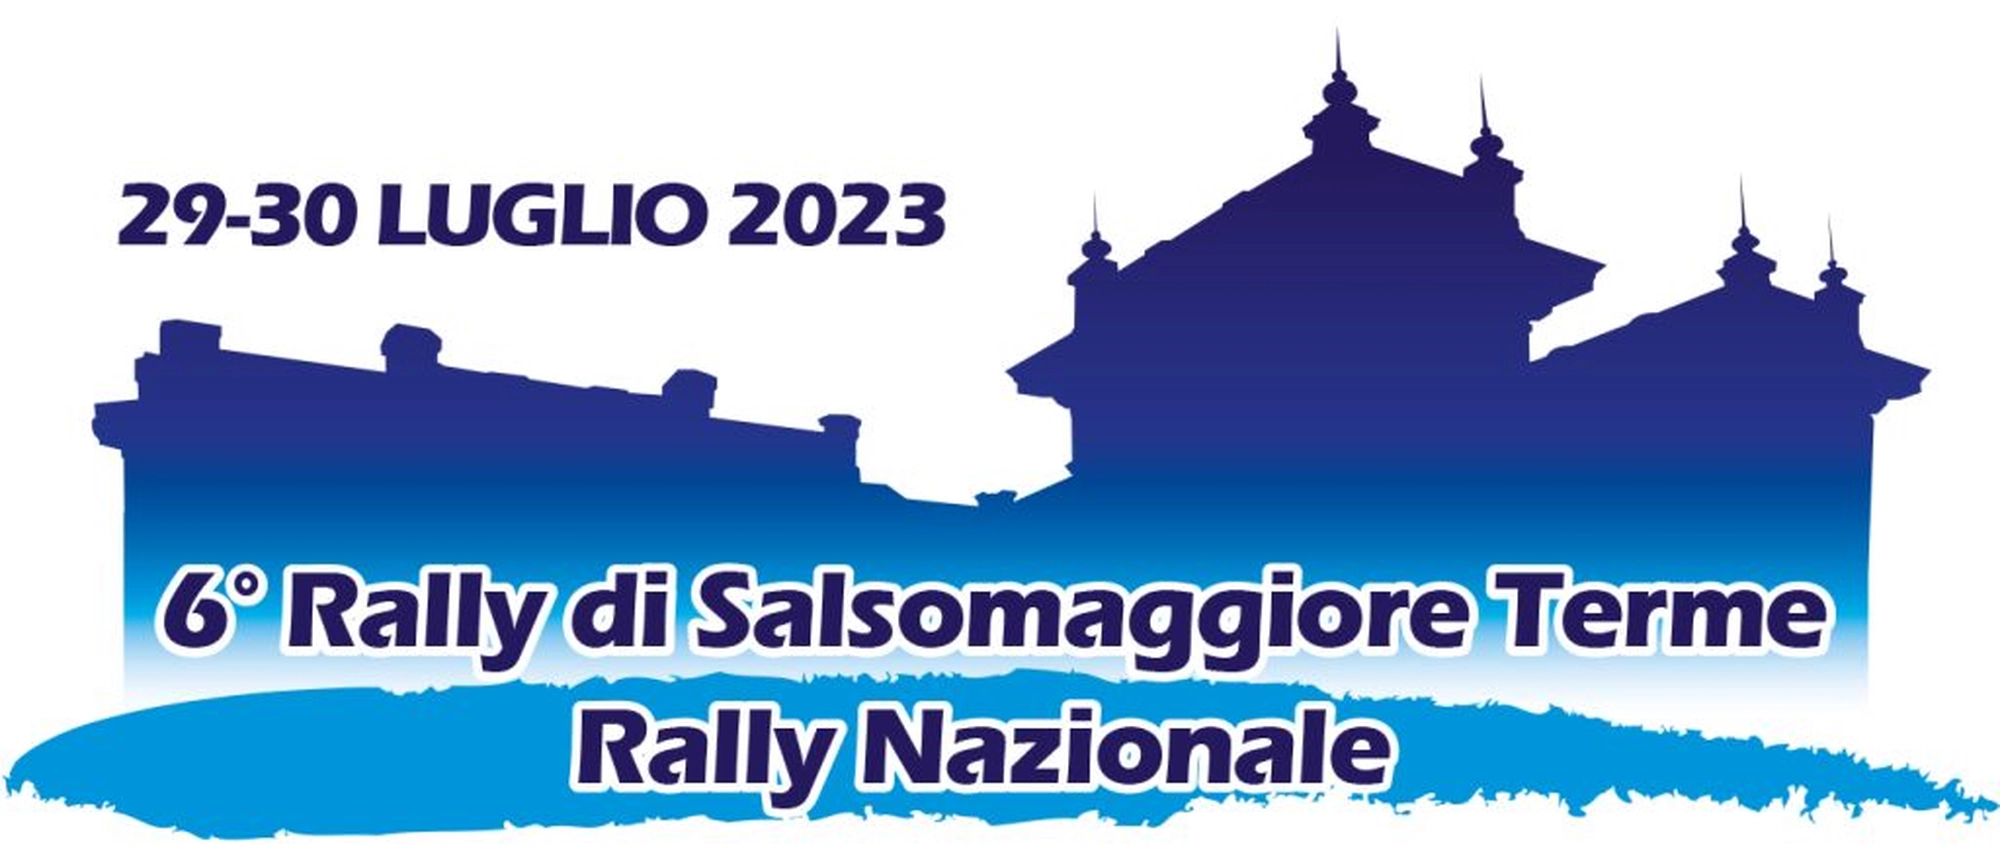 Rally Nazionale Salsomaggiore 2023 